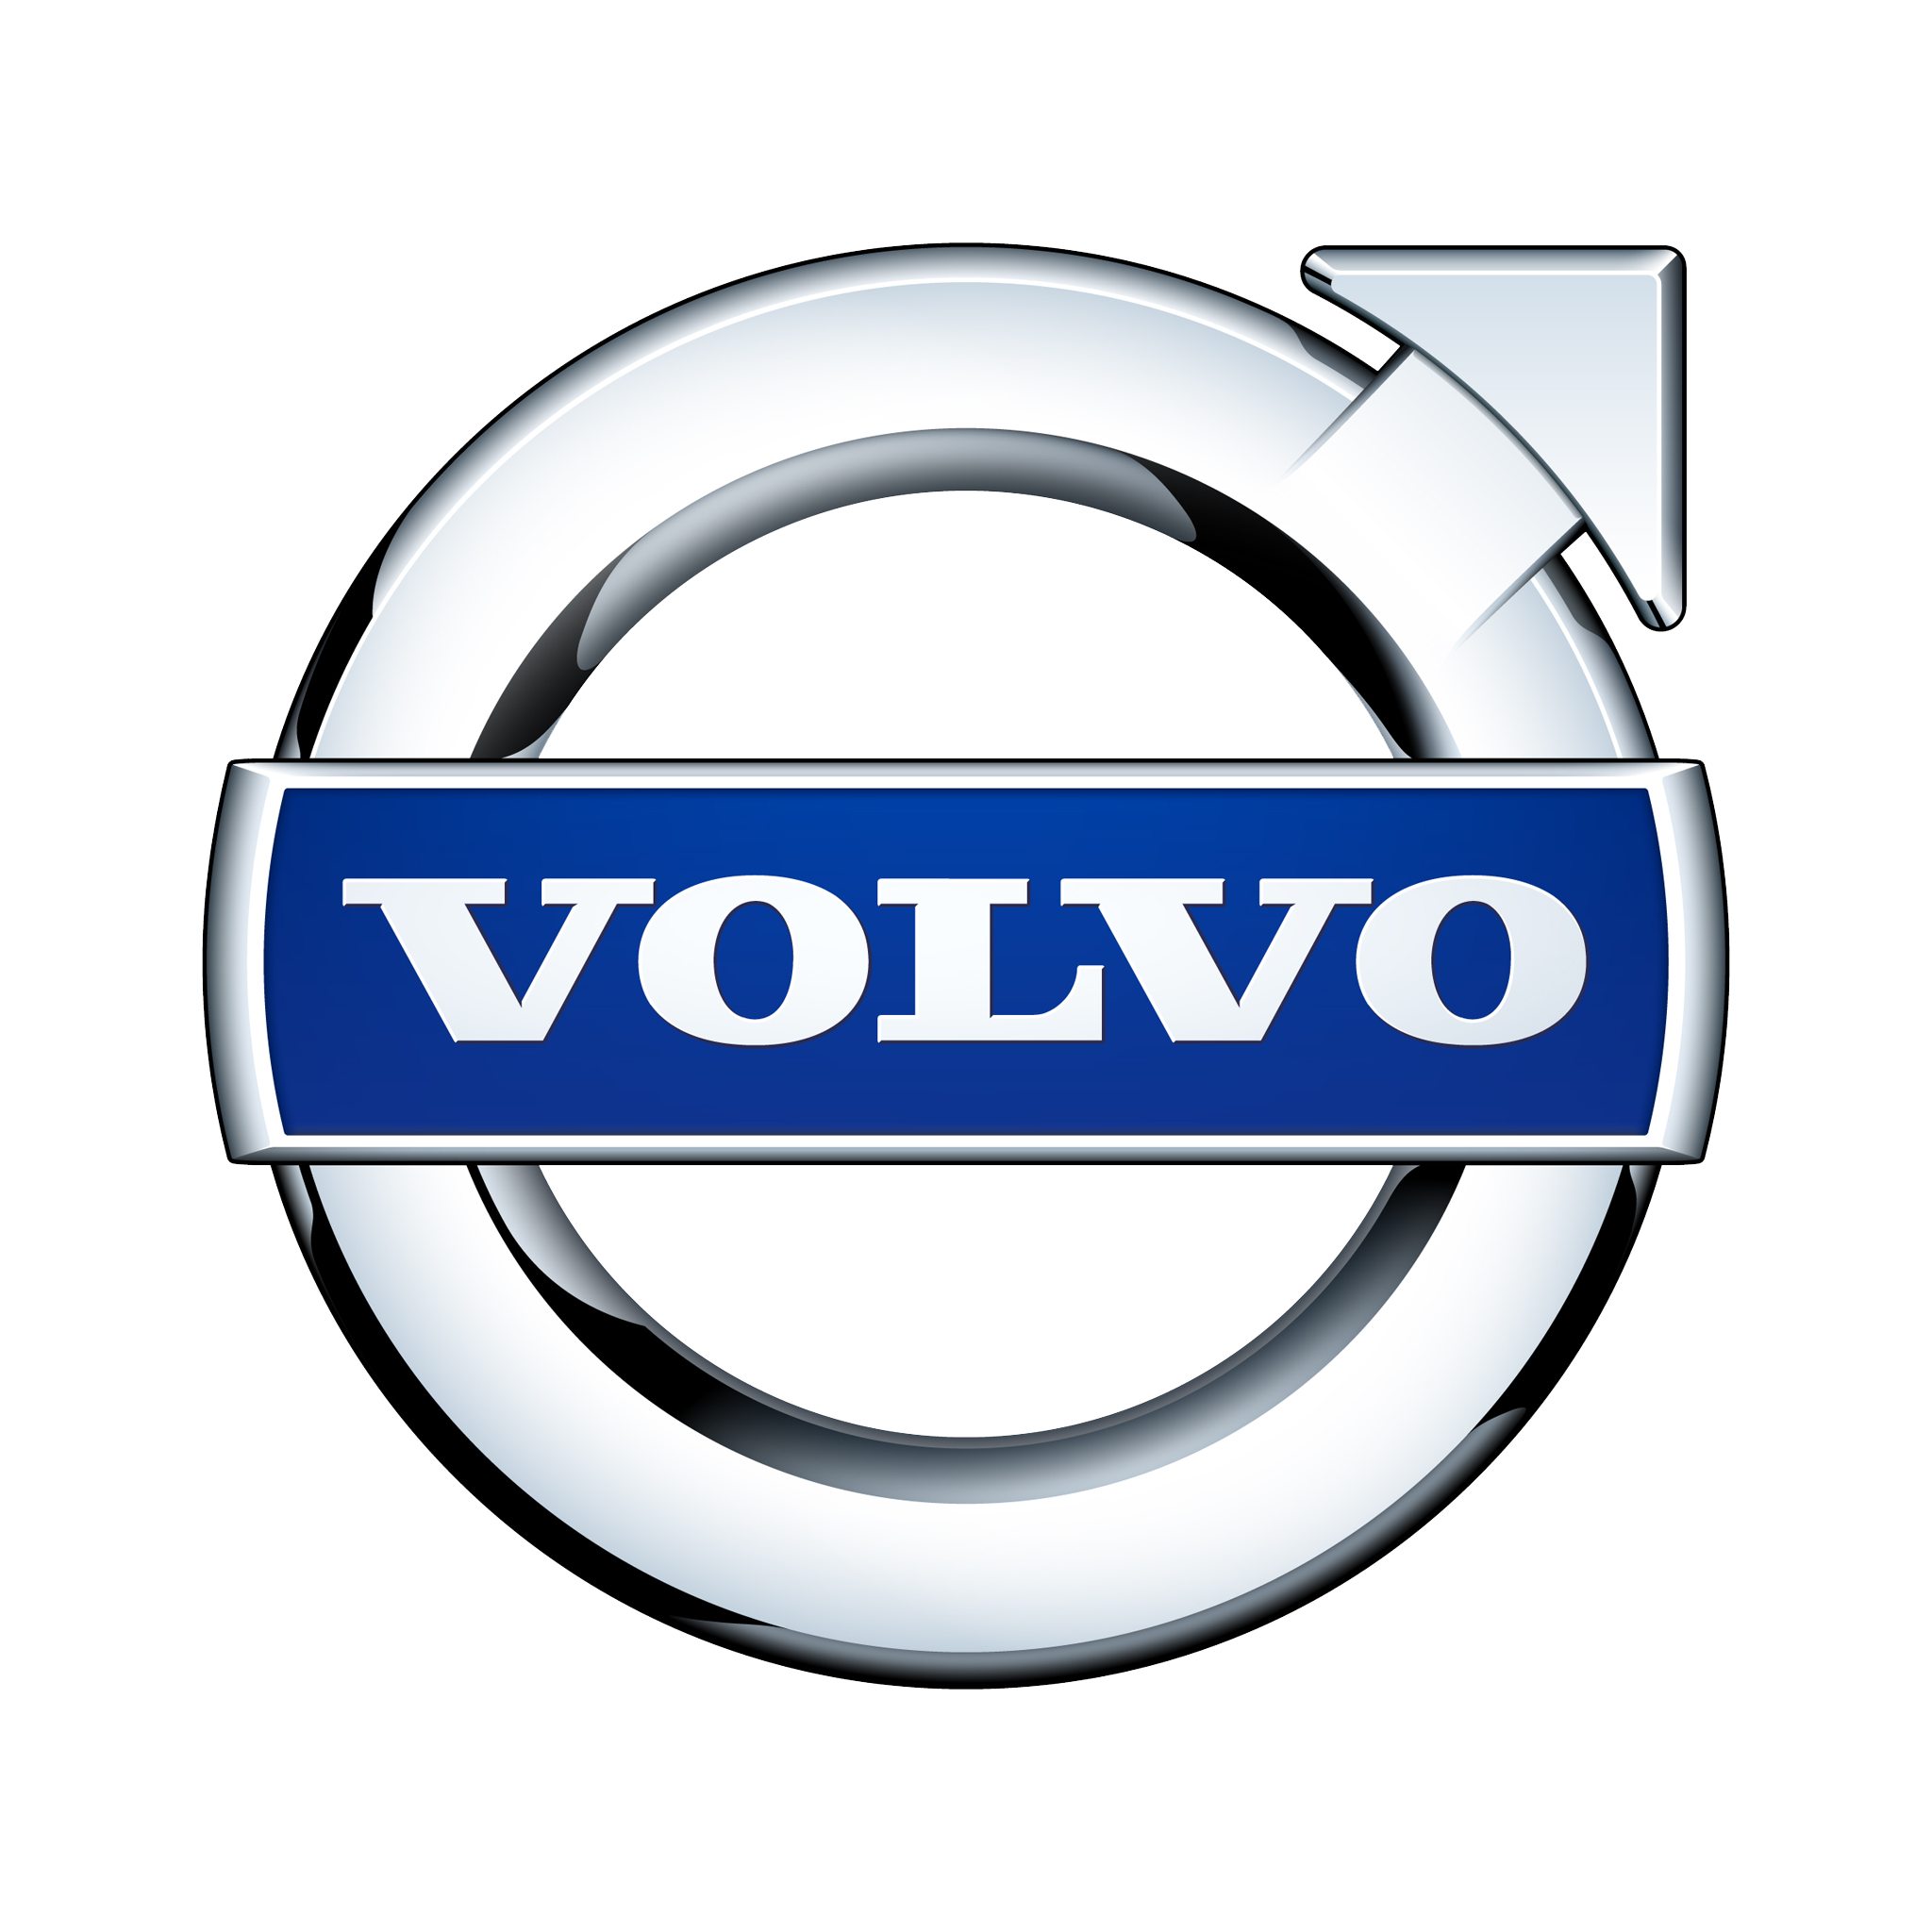 Volvo Repairs